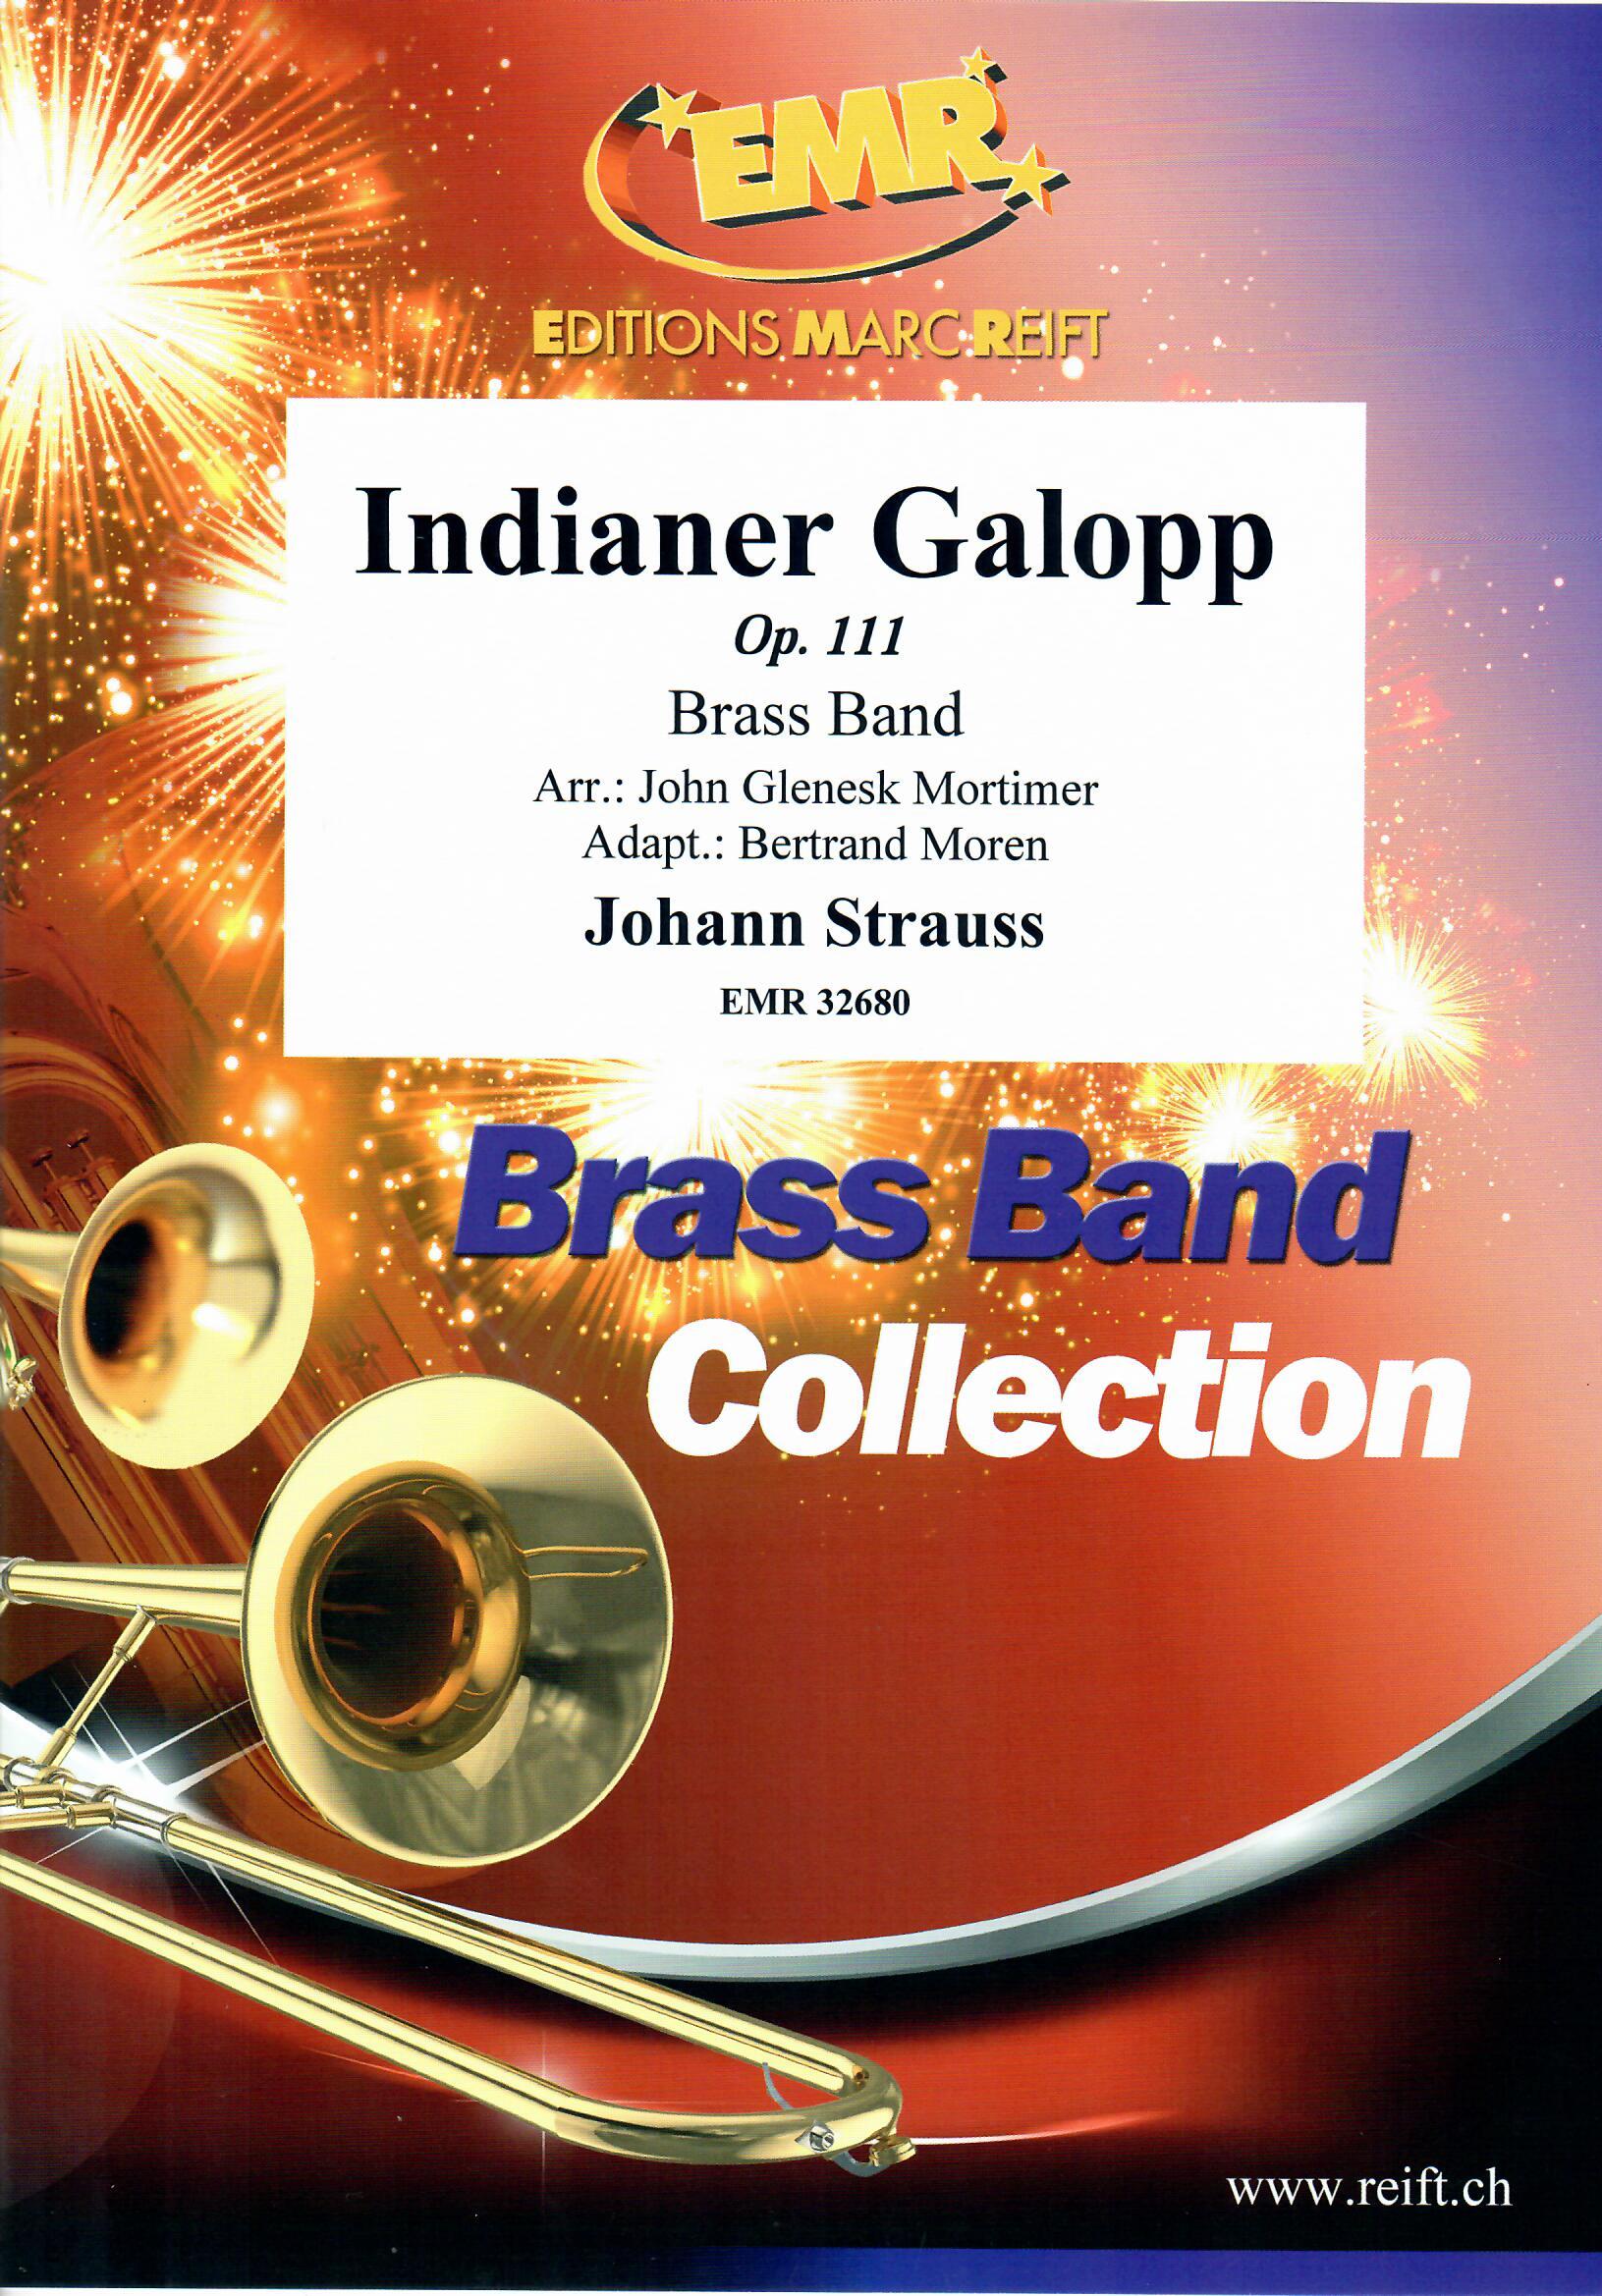 INDIANER GALOPP - Parts & Score